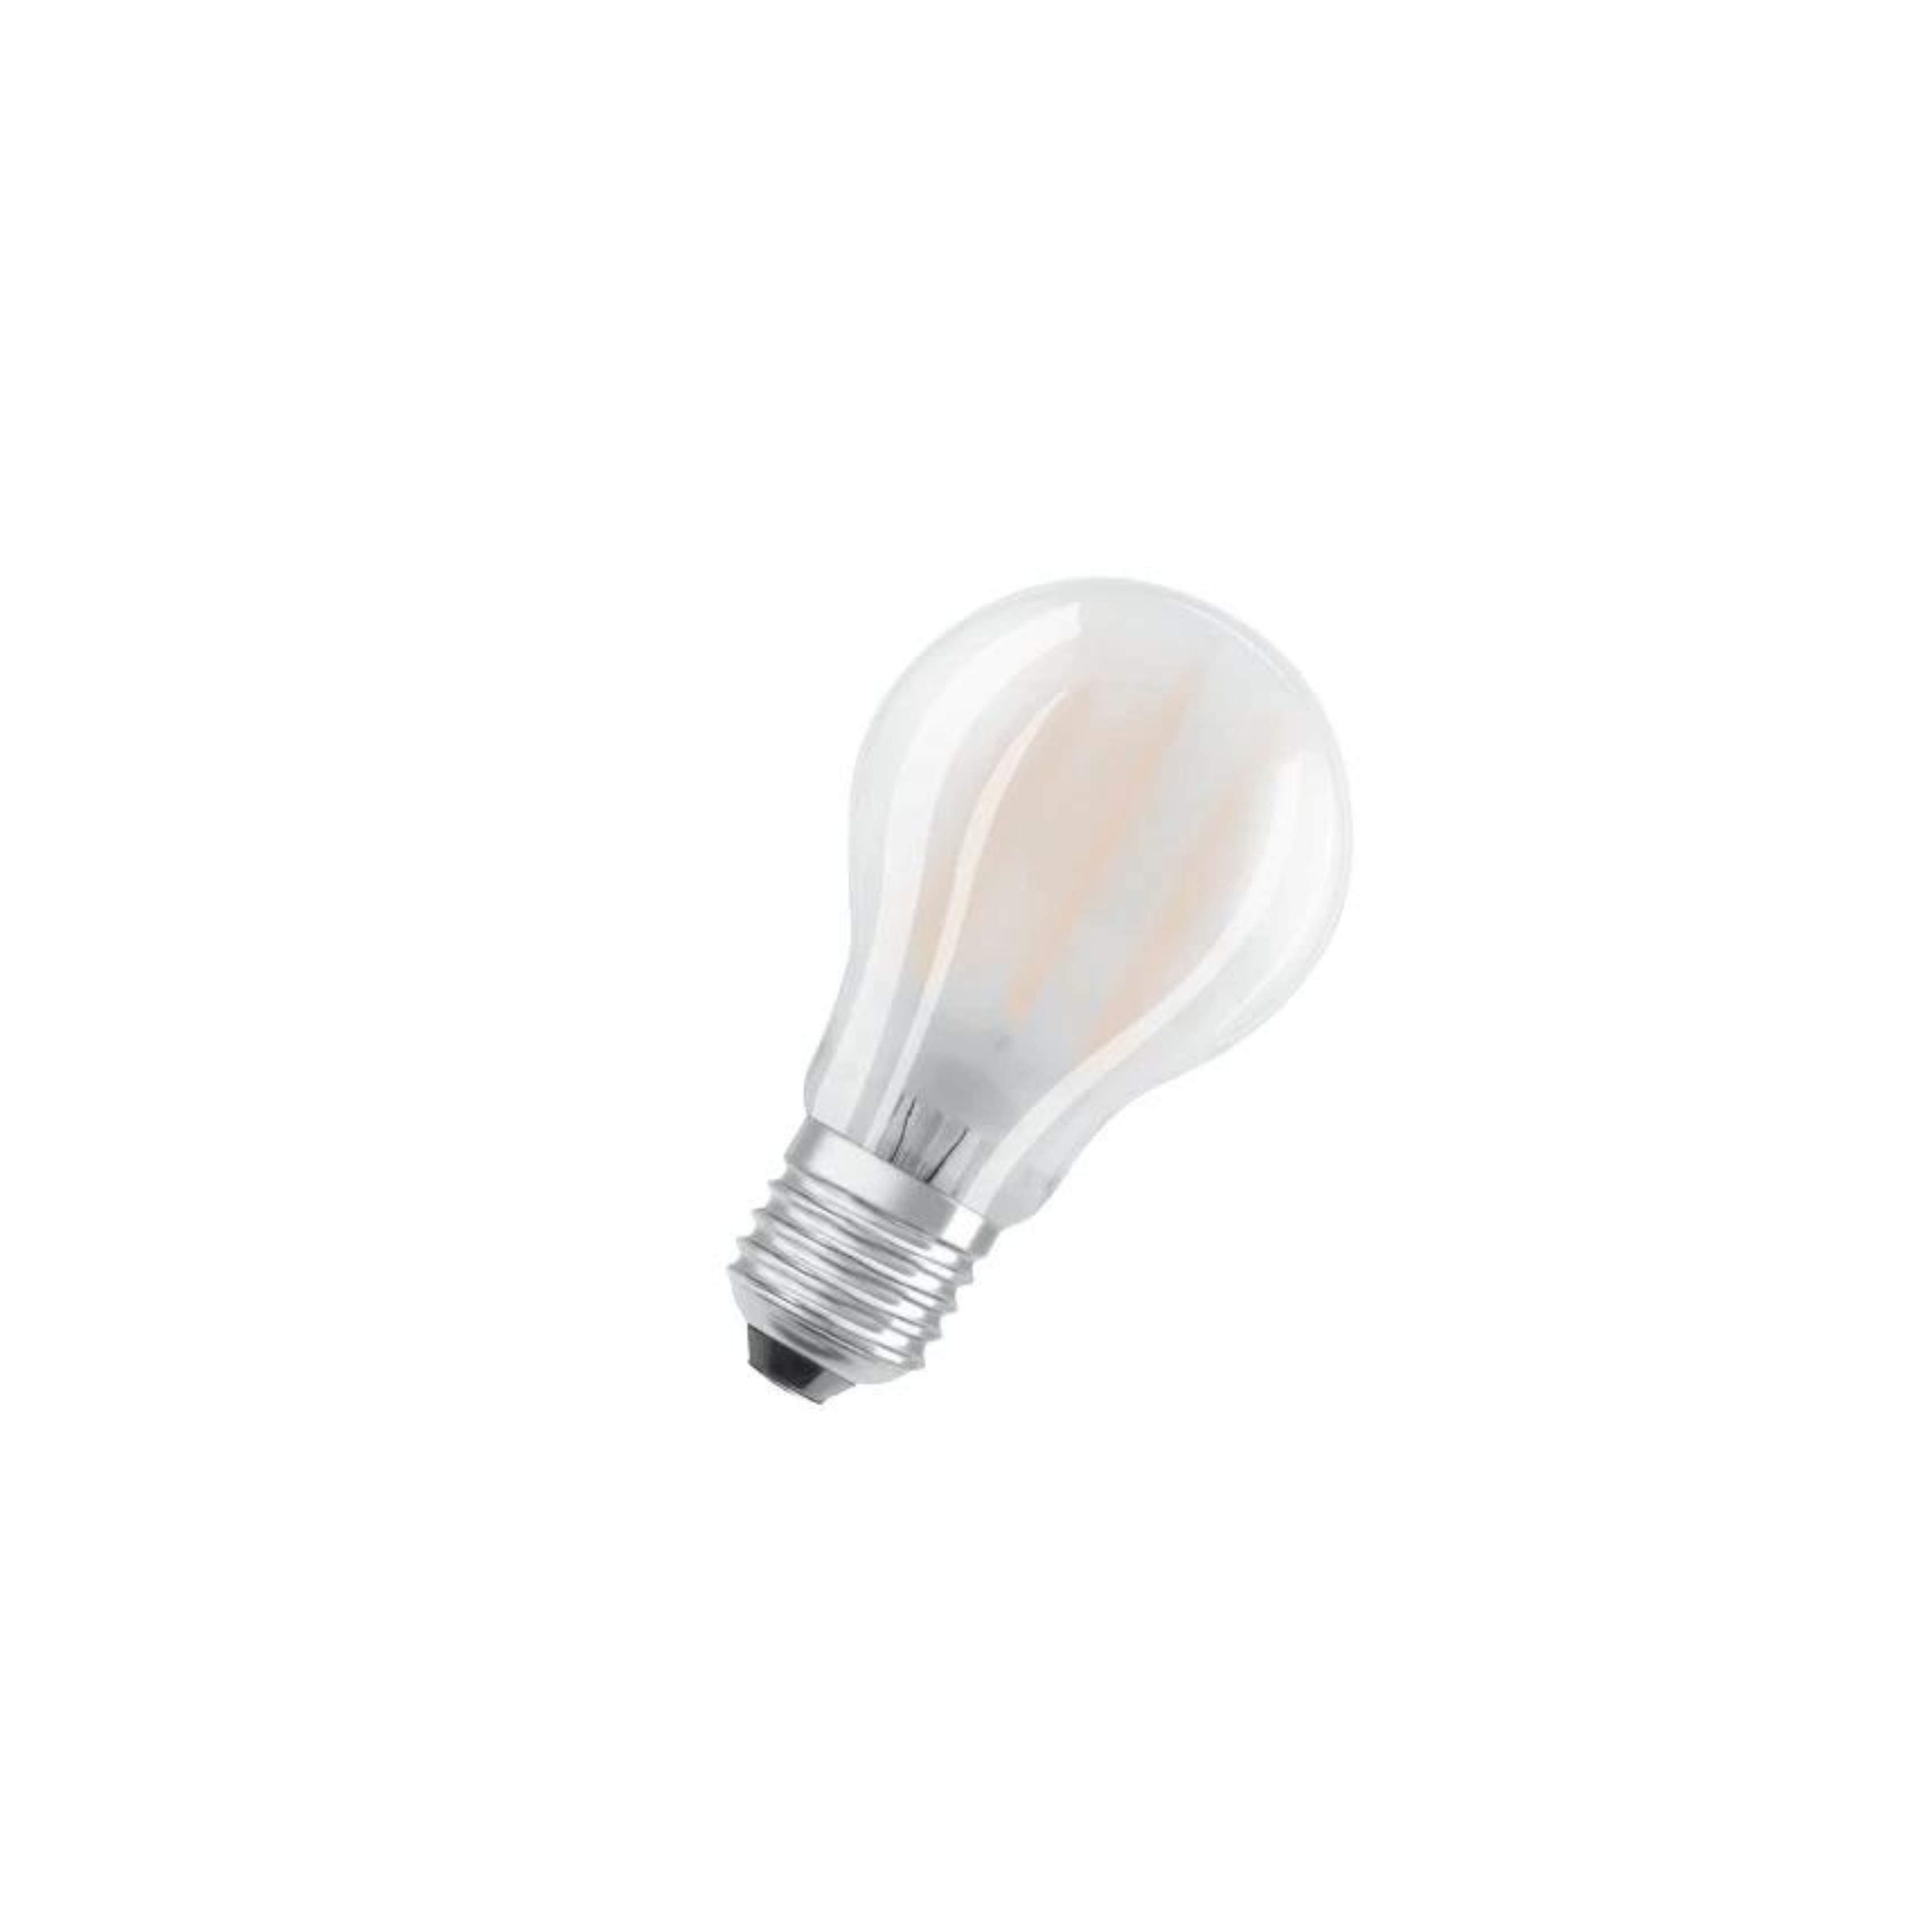 Ampoule LED E27 de 4W, pour applique ou lampe de chevet : Millumine